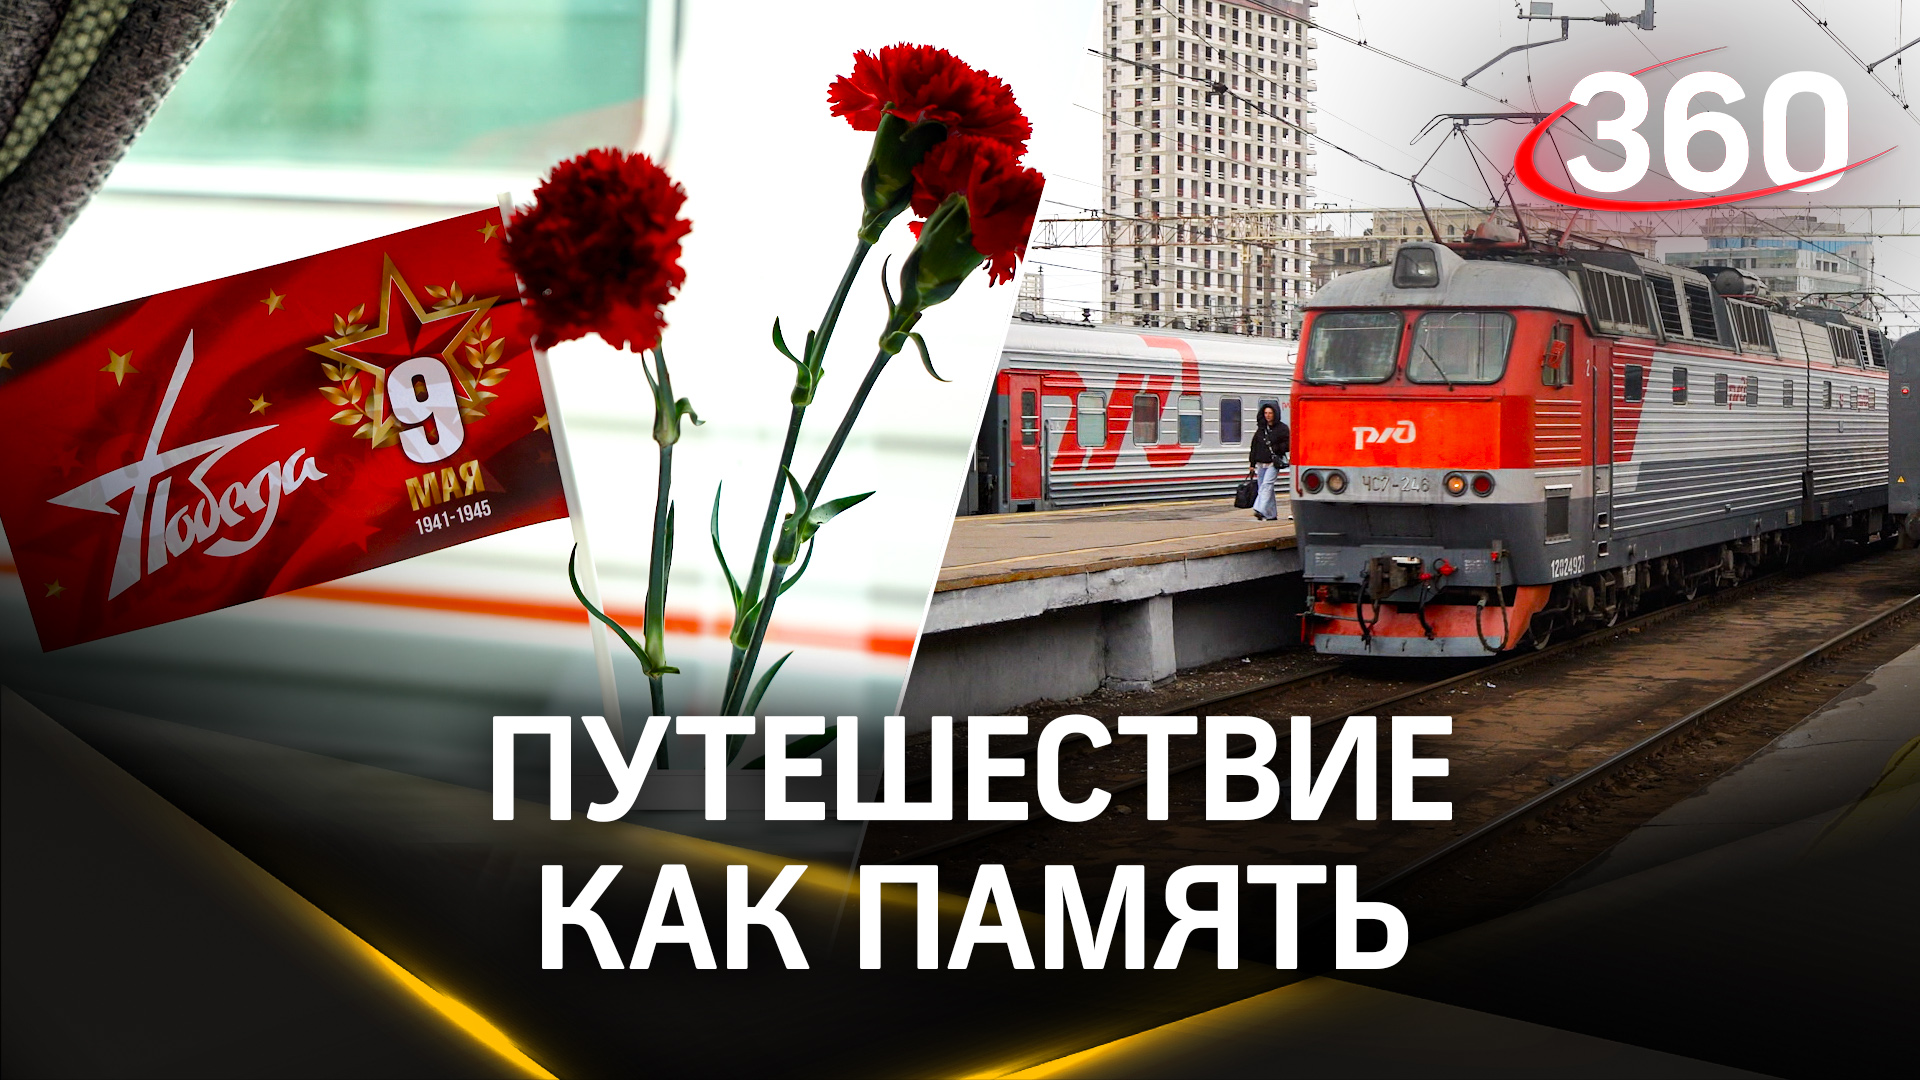 9 мая в городе-герое. Туристический поезд ФПК отправился из Москвы в Волгоград